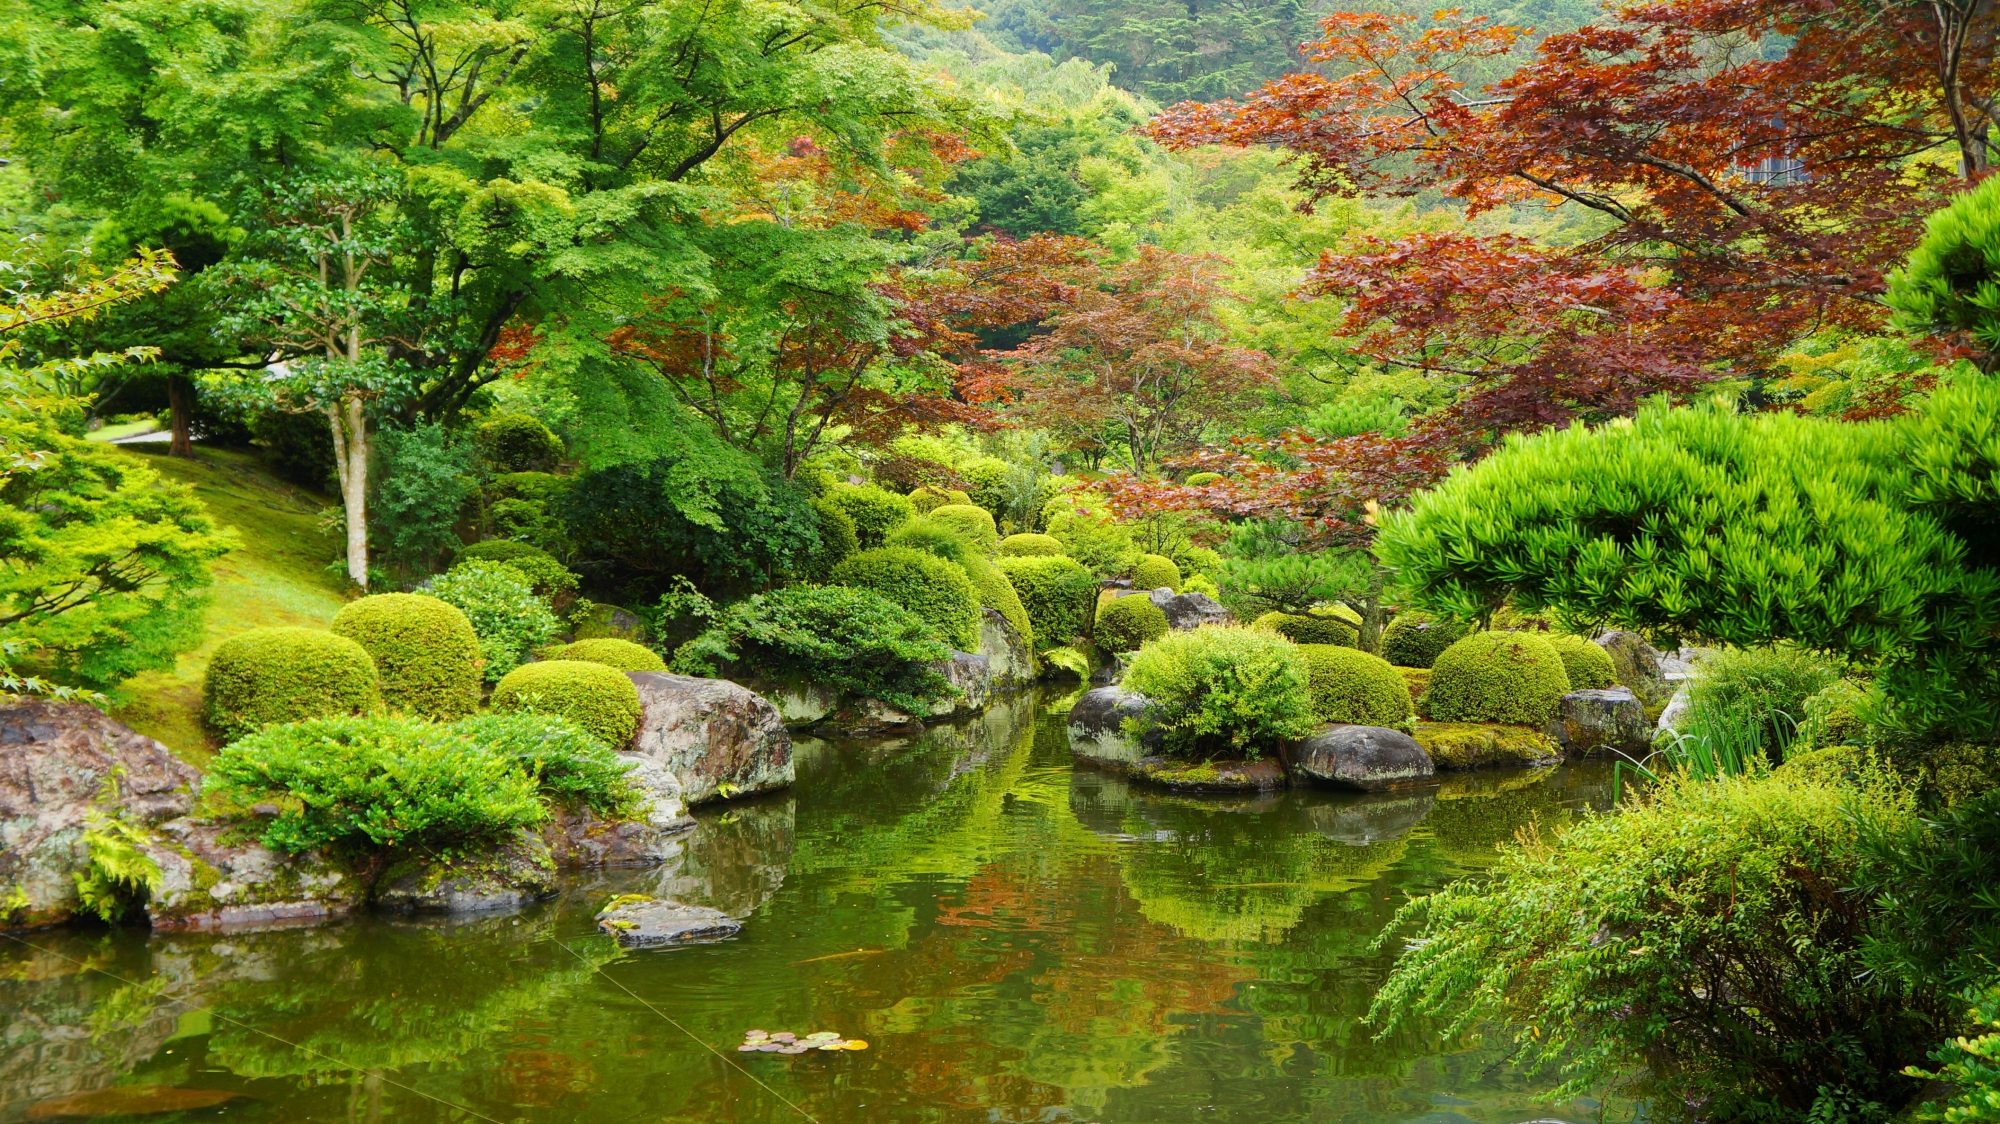 三室戸寺の多彩な緑の溢れる見事な池泉式庭園